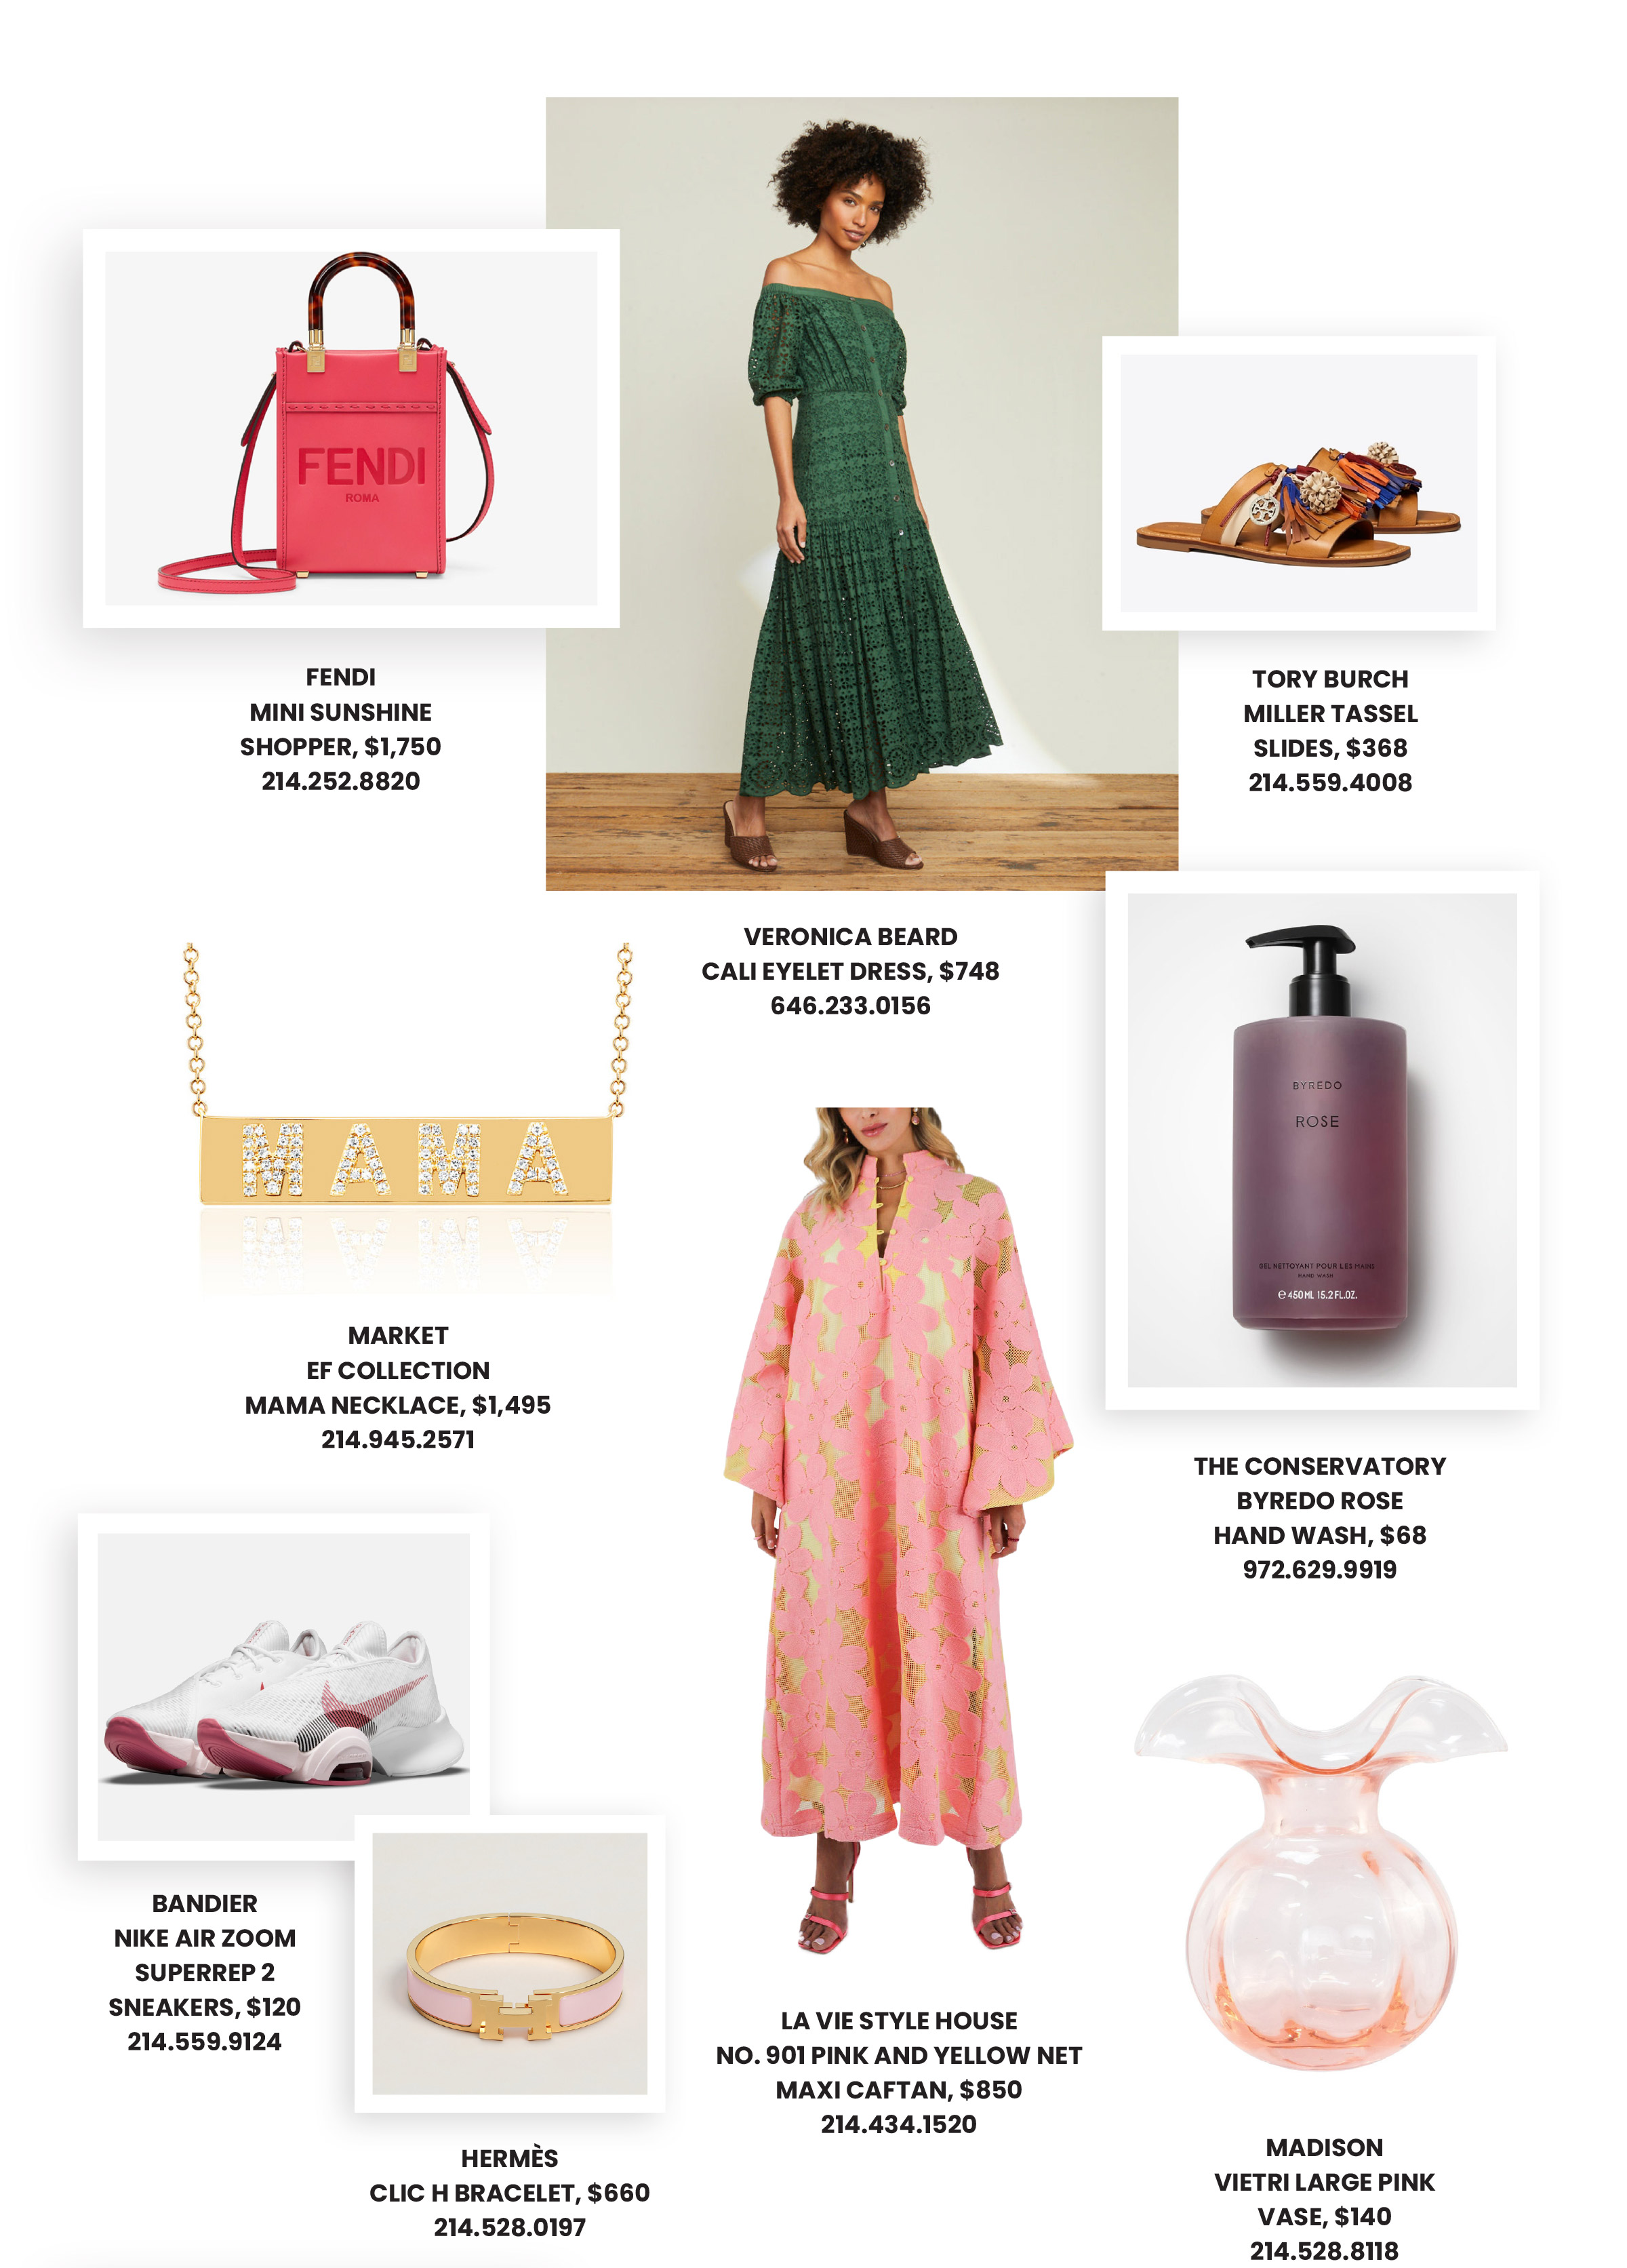 Collage de ideas de regalos para el Día de la Madre con vestidos, carteras, zapatos, joyas y productos de belleza de las marcas de Highland Park Village